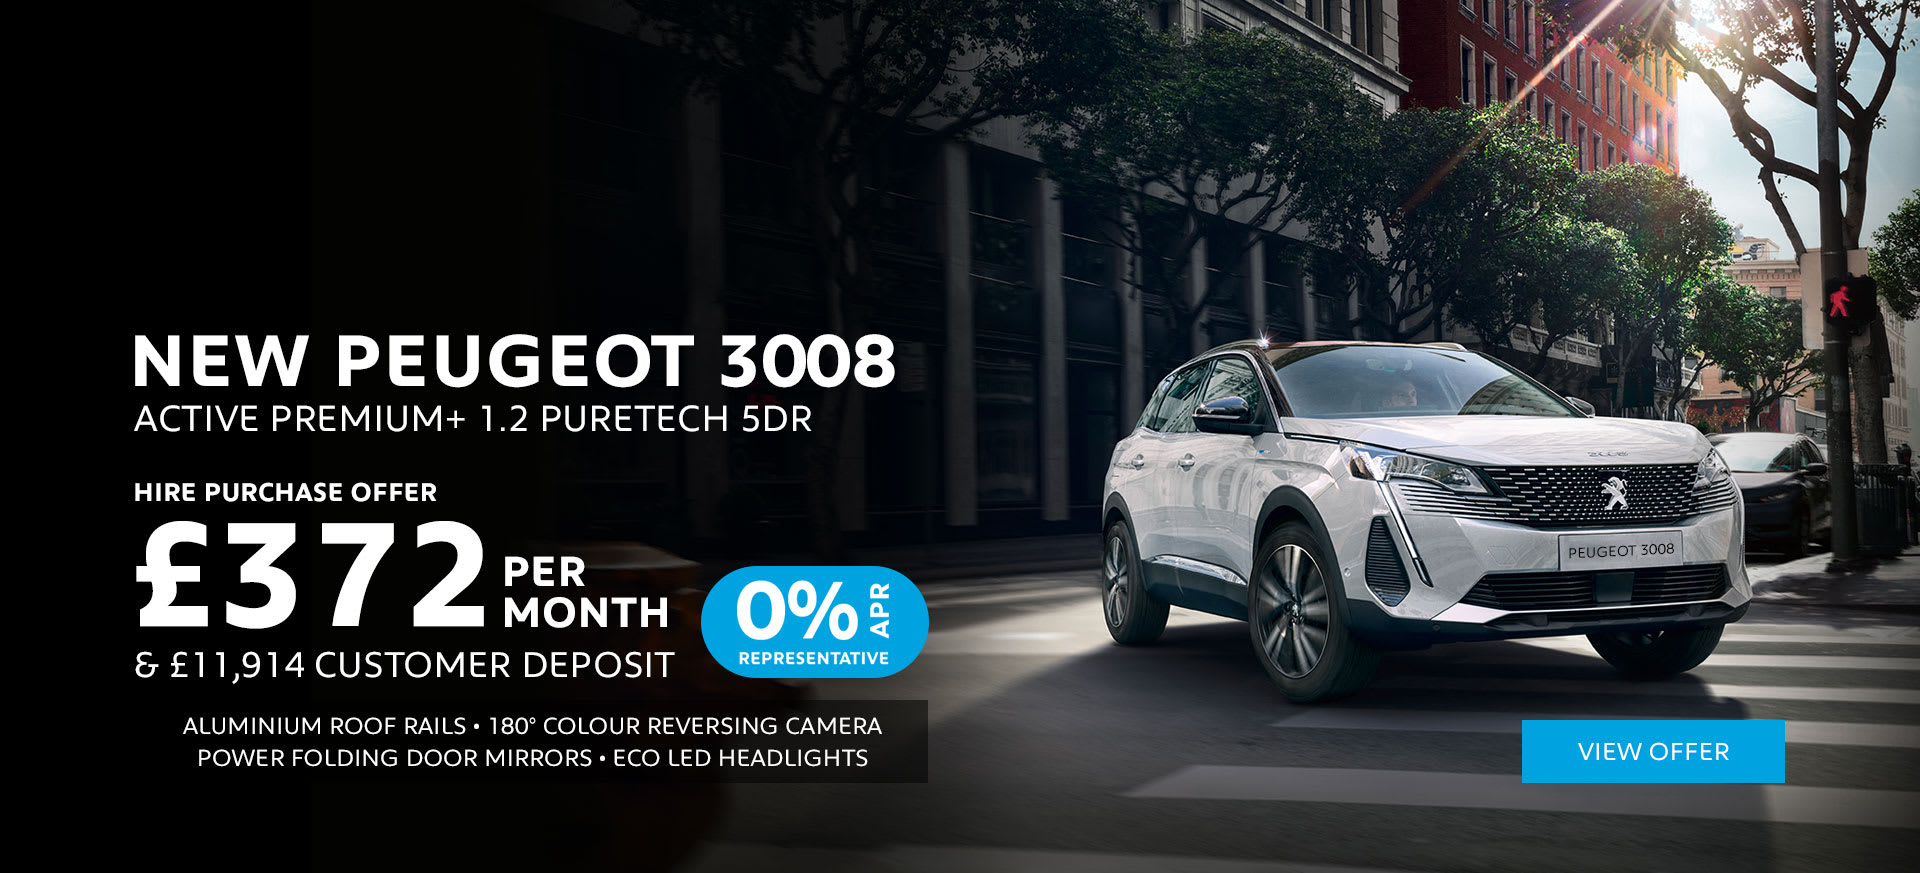 Peugeot 3008 Active Premium+